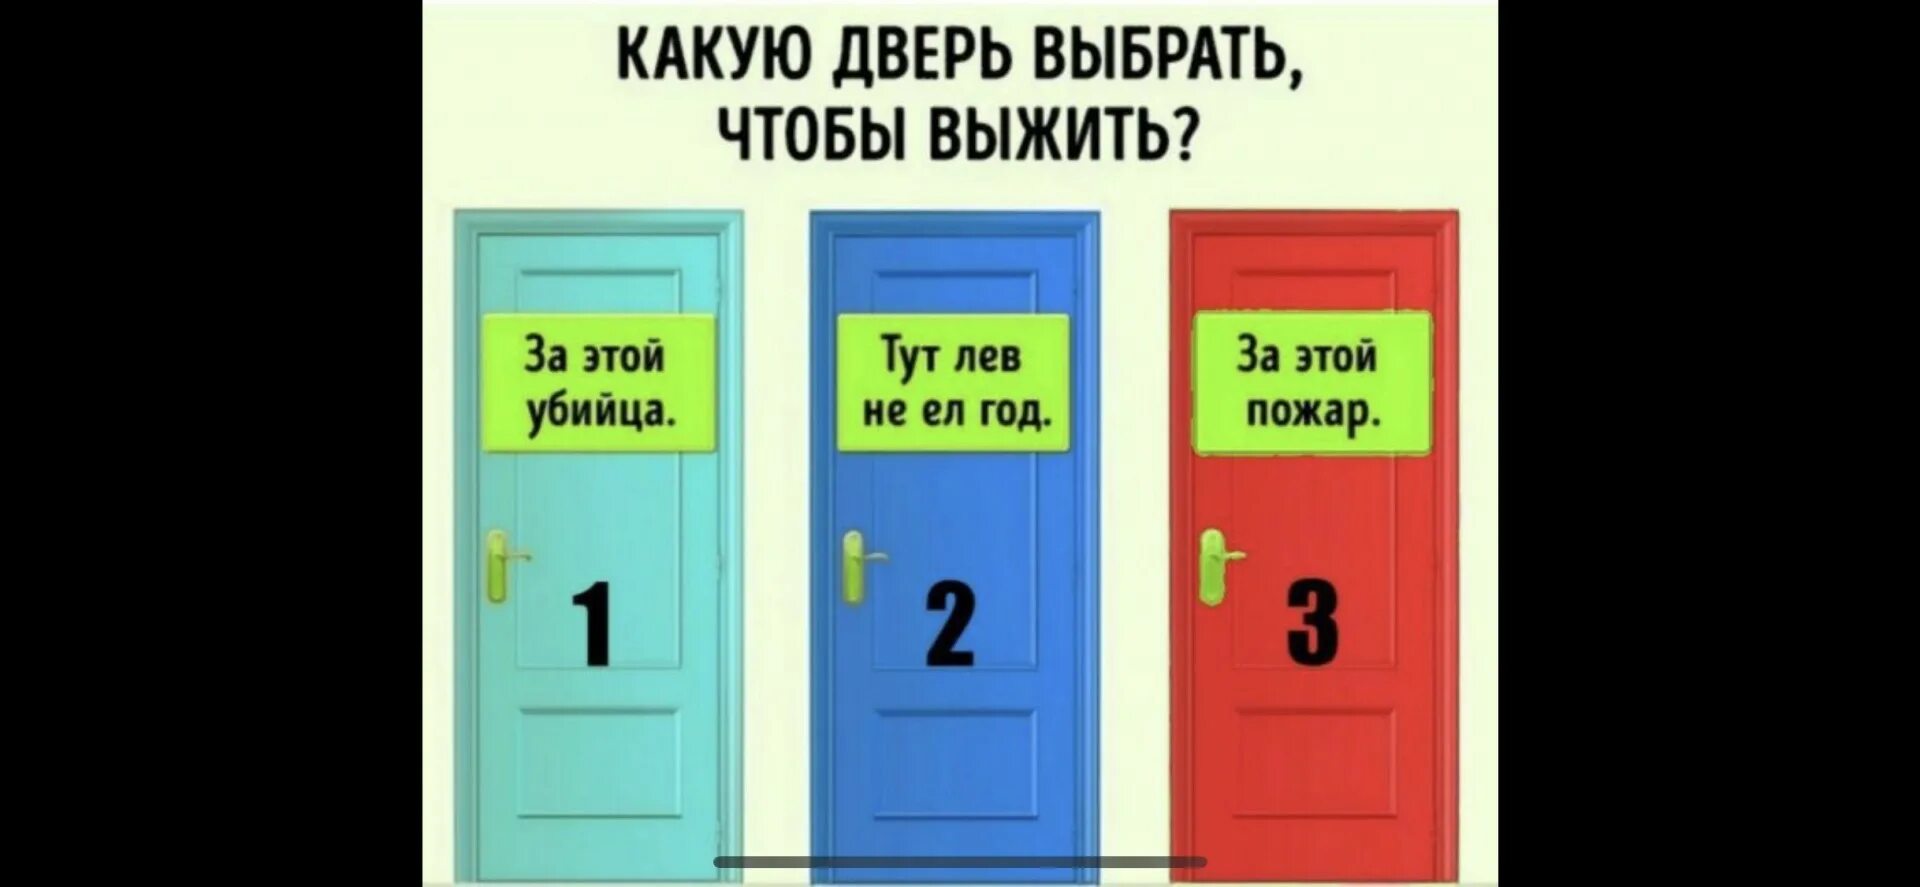 Вопрос двум стражникам. Загадка про две двери. Дверь 2 на 2. Задача про охранников и двери. Загадка про 2 двери и двух охранников.